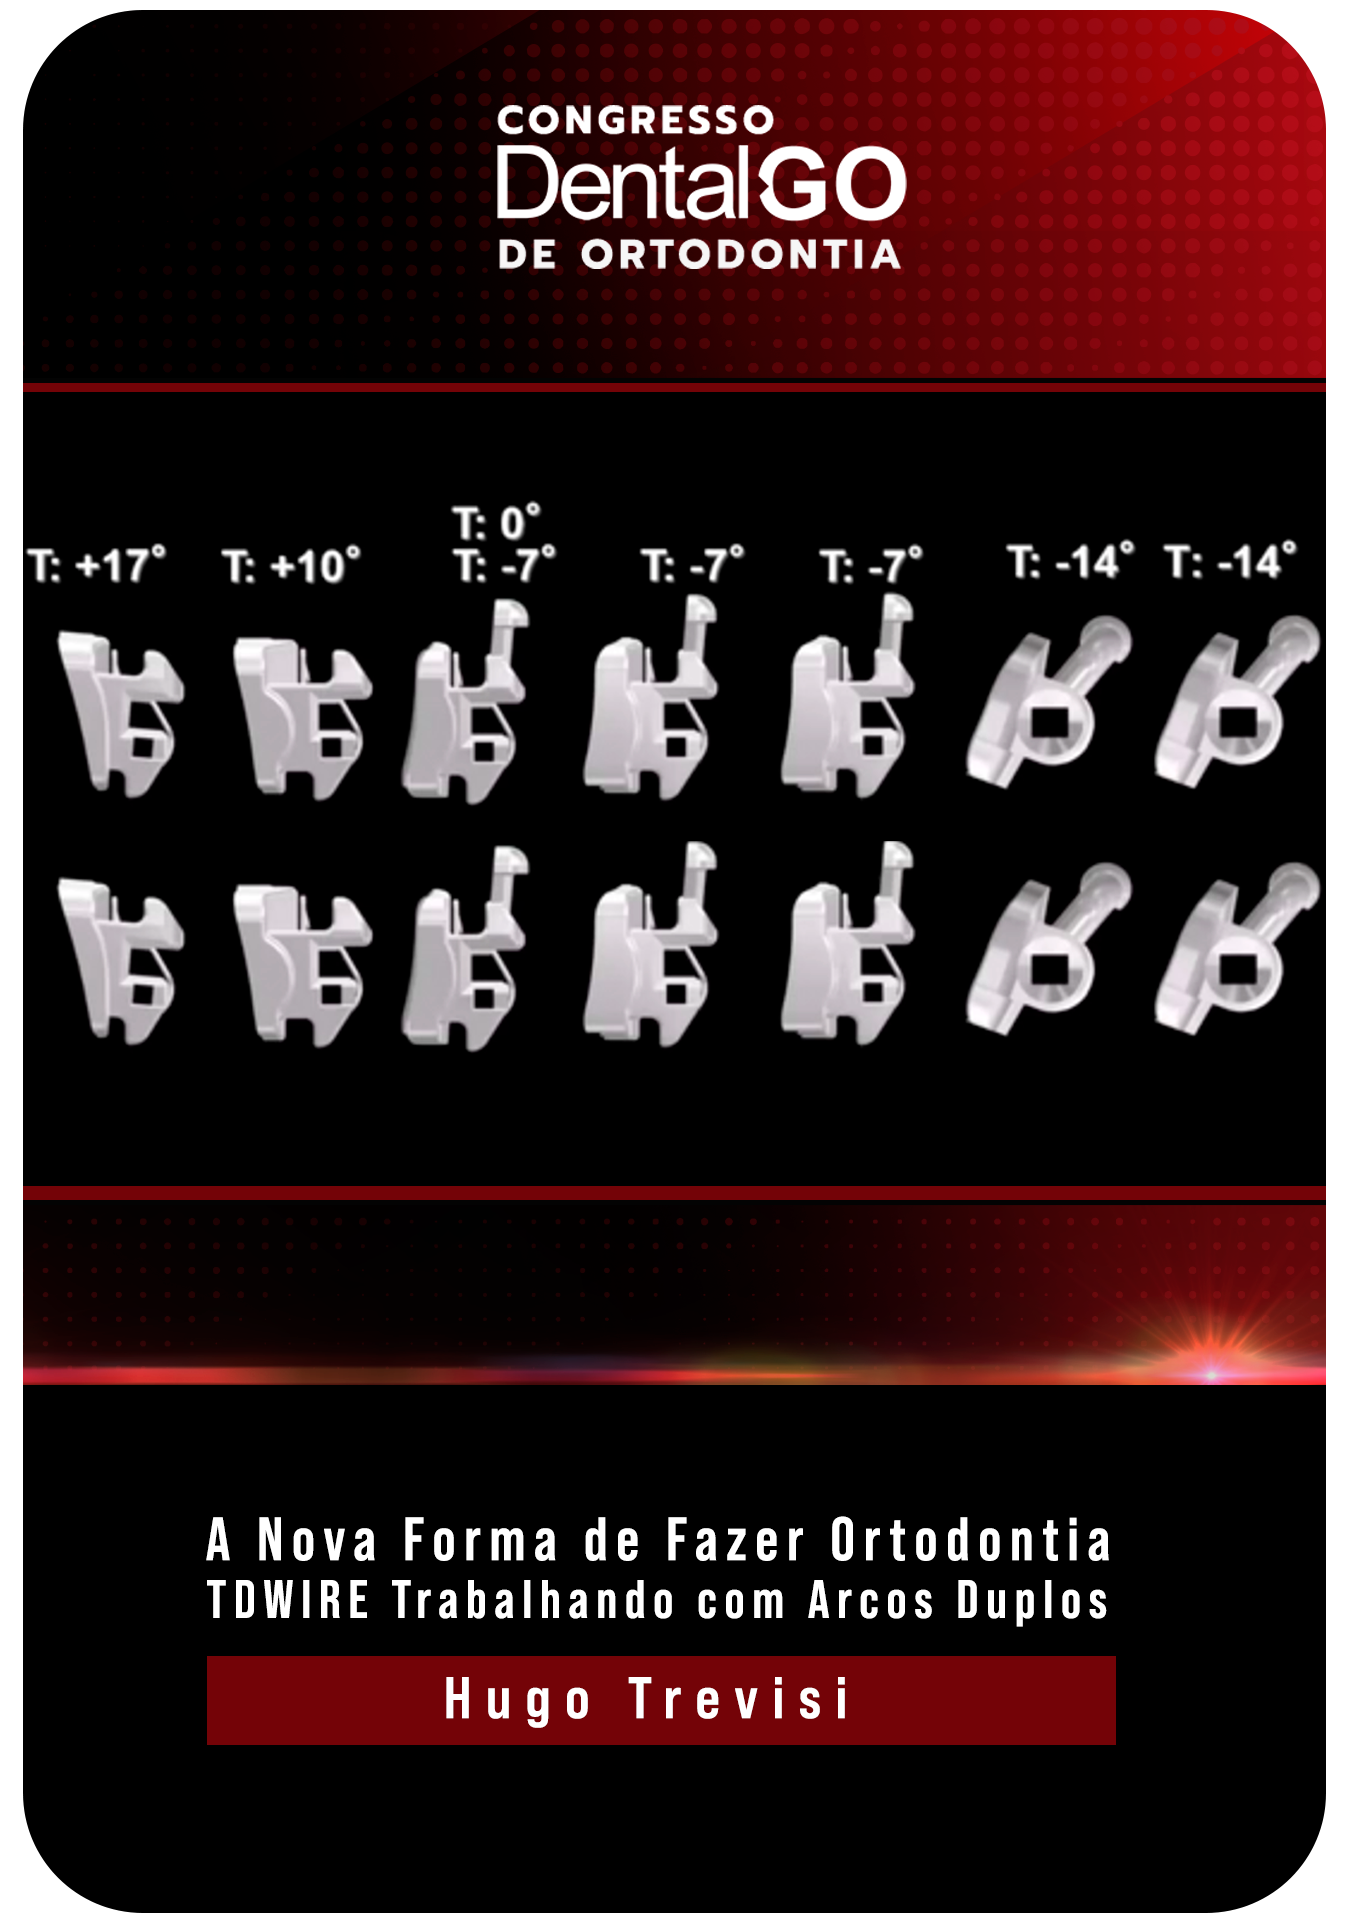 A Nova Forma de Fazer Ortodontia - TDWIRE Trabalhando com Arcos Duplos - Hugo Trevisi